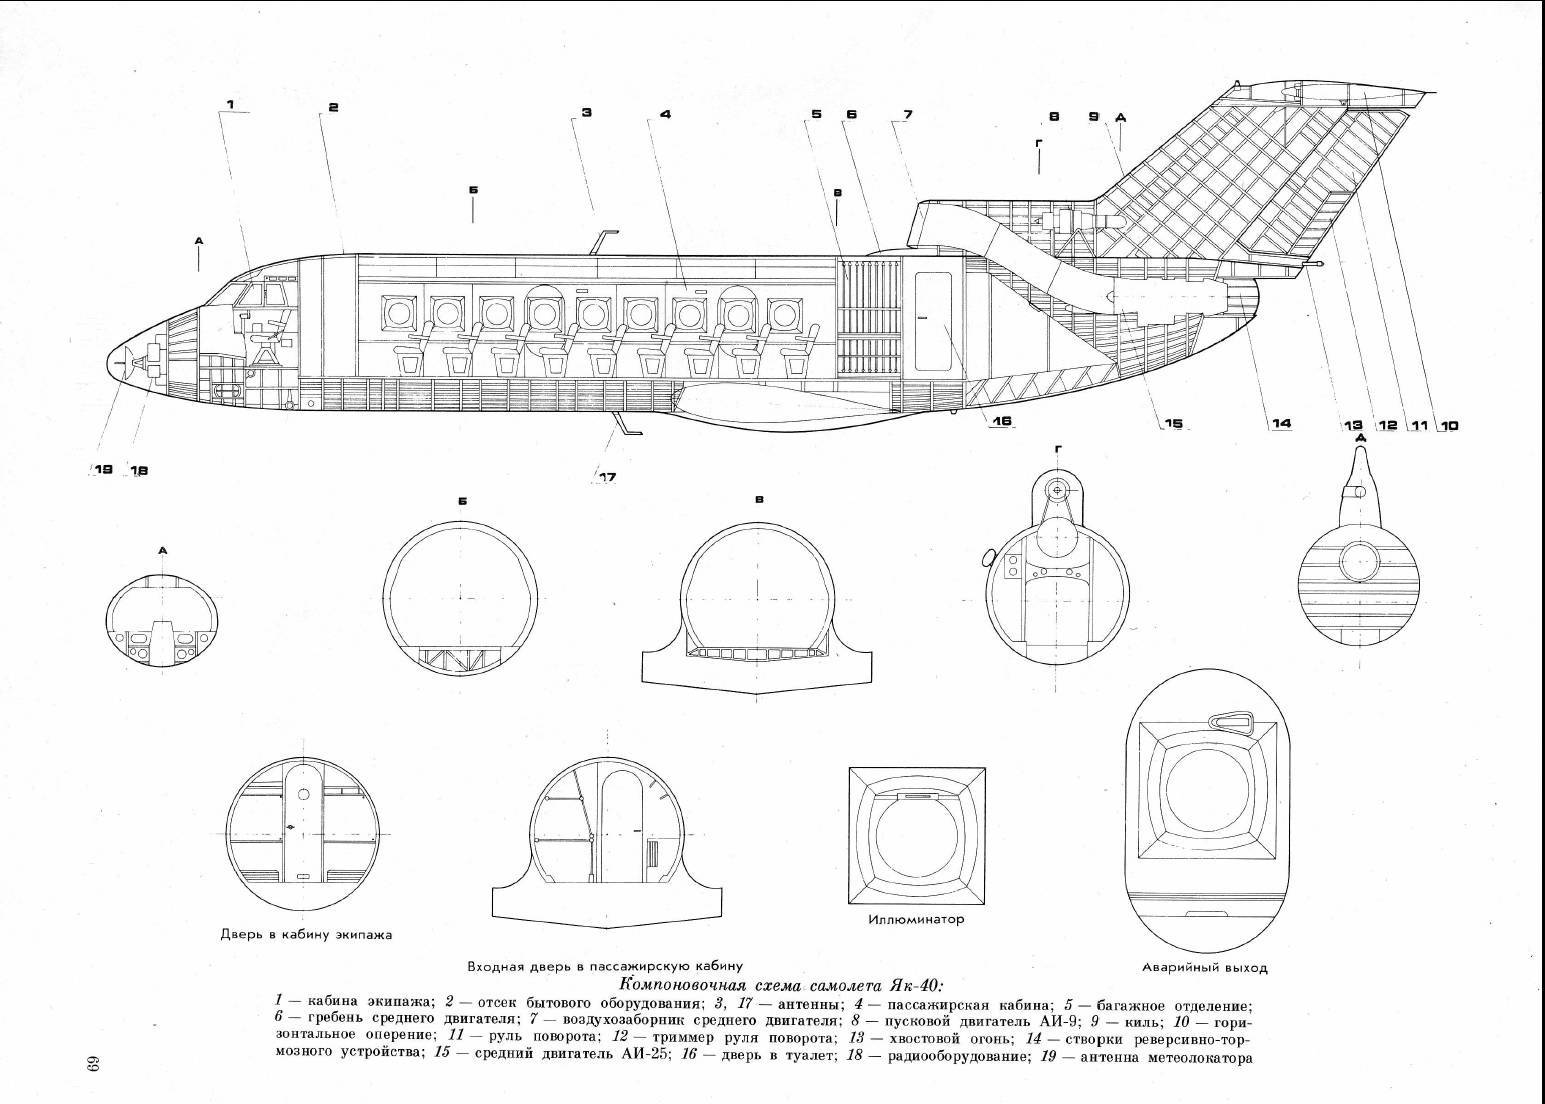 Як-40 двухдвигательный, технические характеристики ттх и модернизации самолета, схема салона и кабины, взлет и посадка